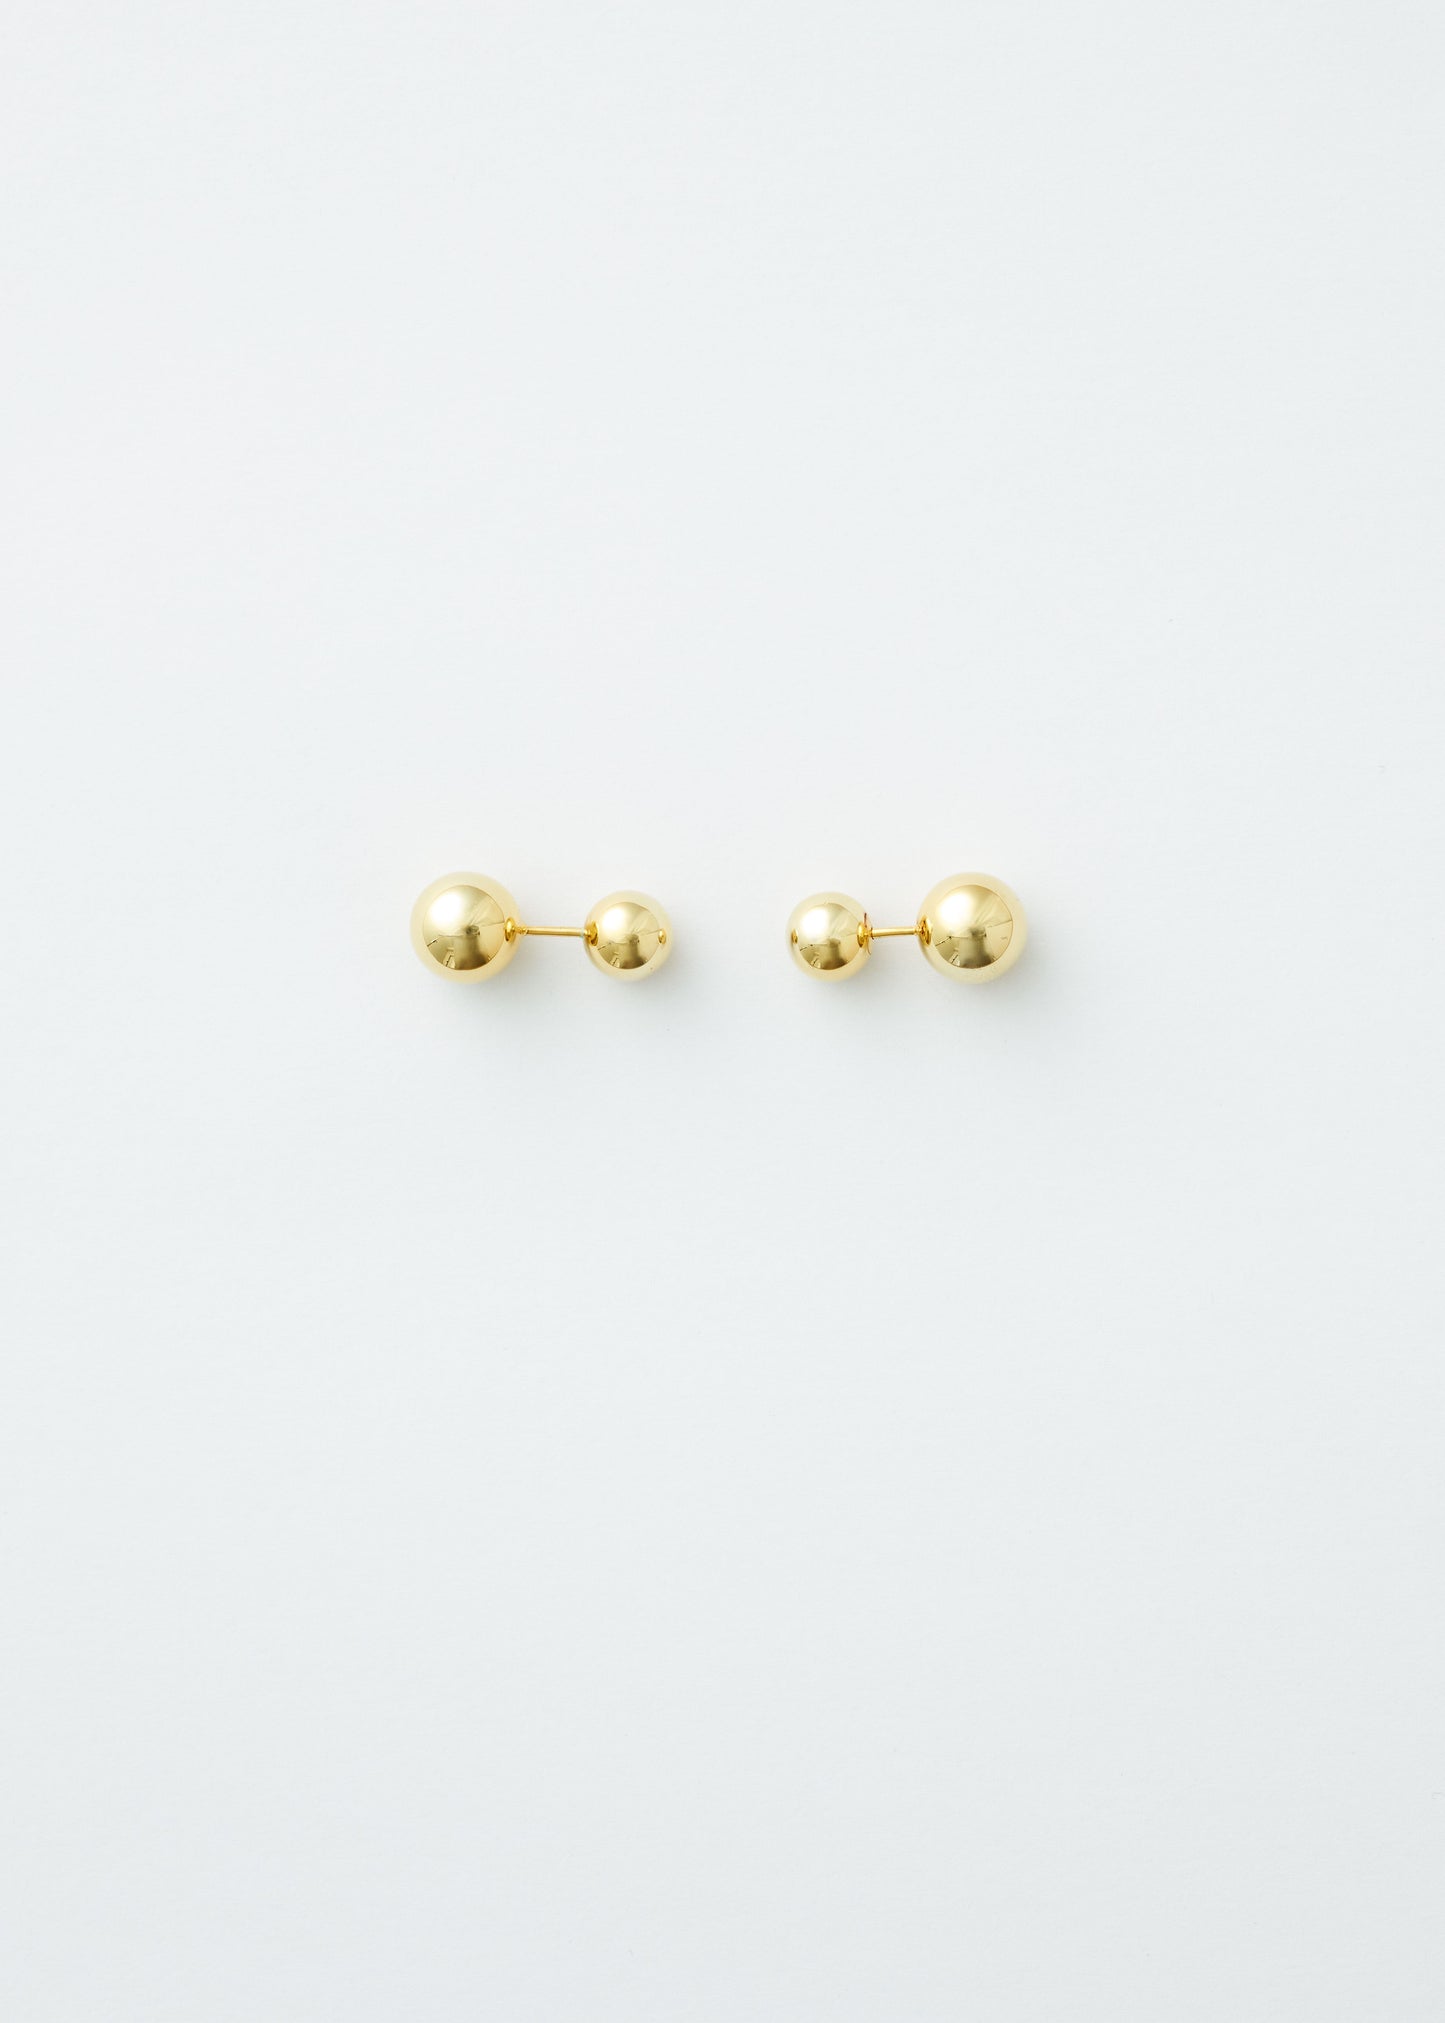 Stud earrings - Gold - Pair